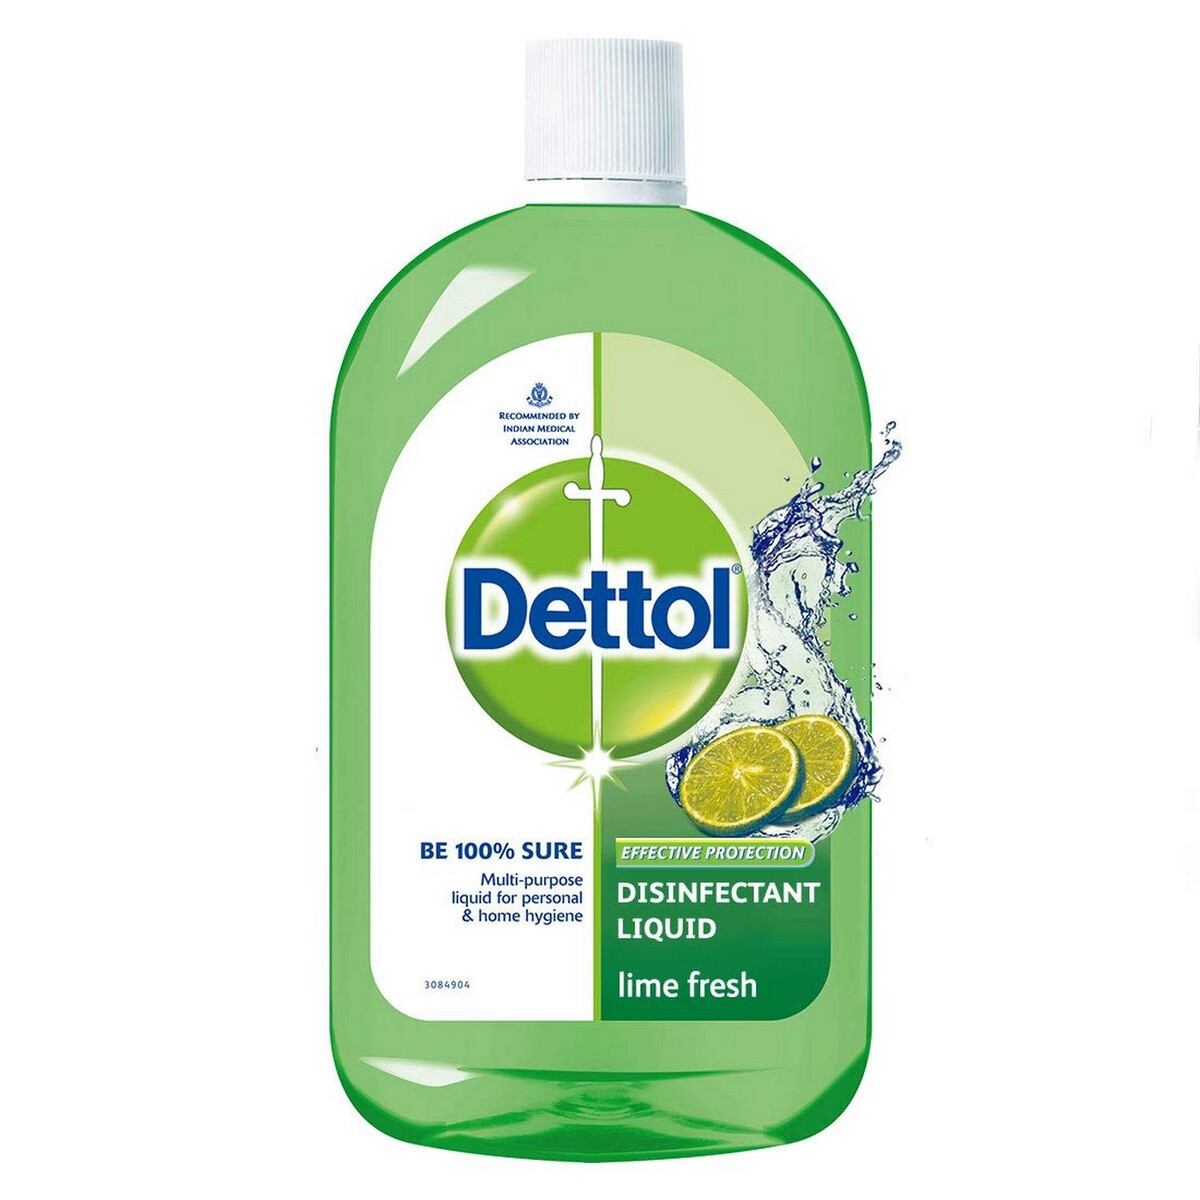 Dettol Multiuse Hygiene Liquid 200ml